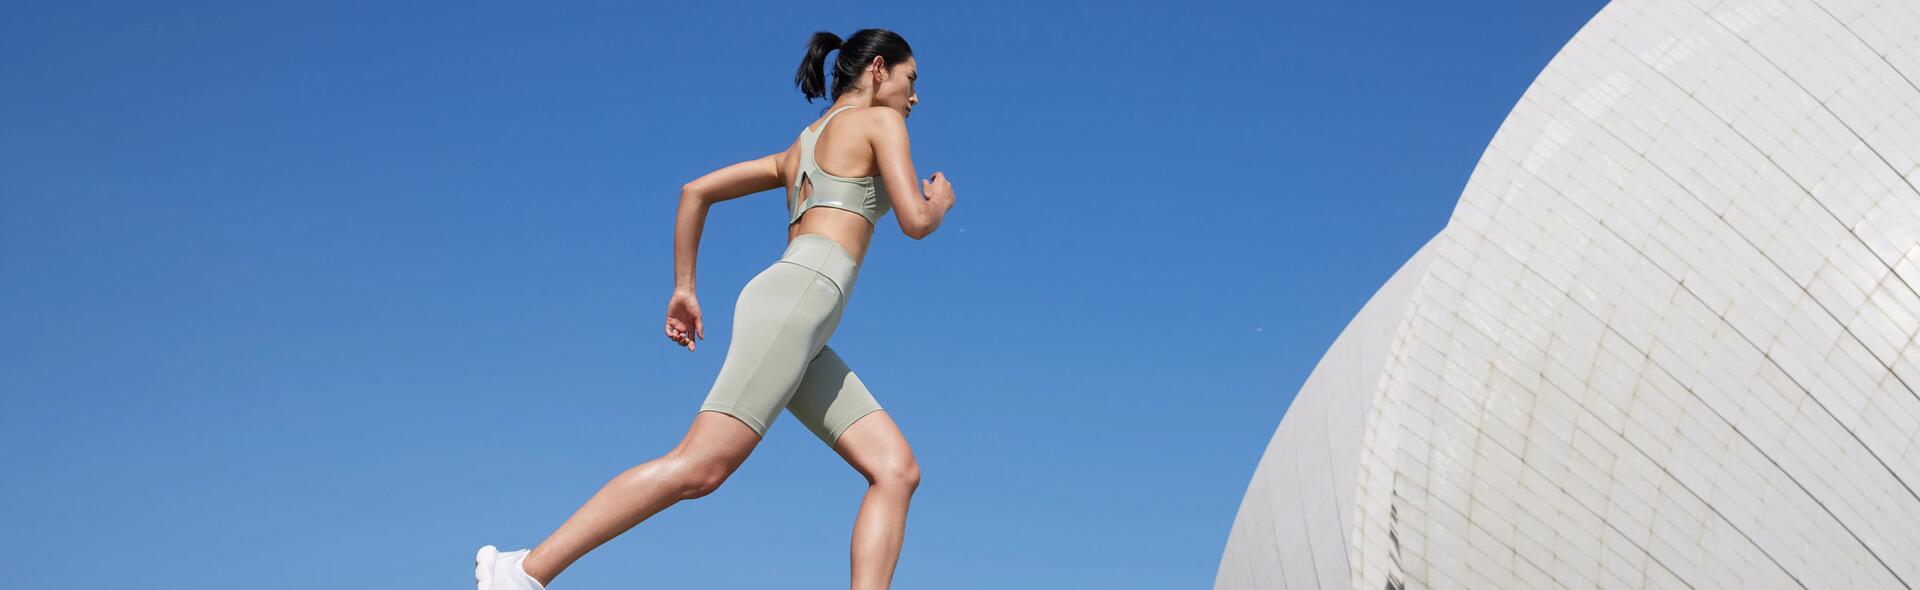 kobieta biegnąca w legginsach i staniku sportowym